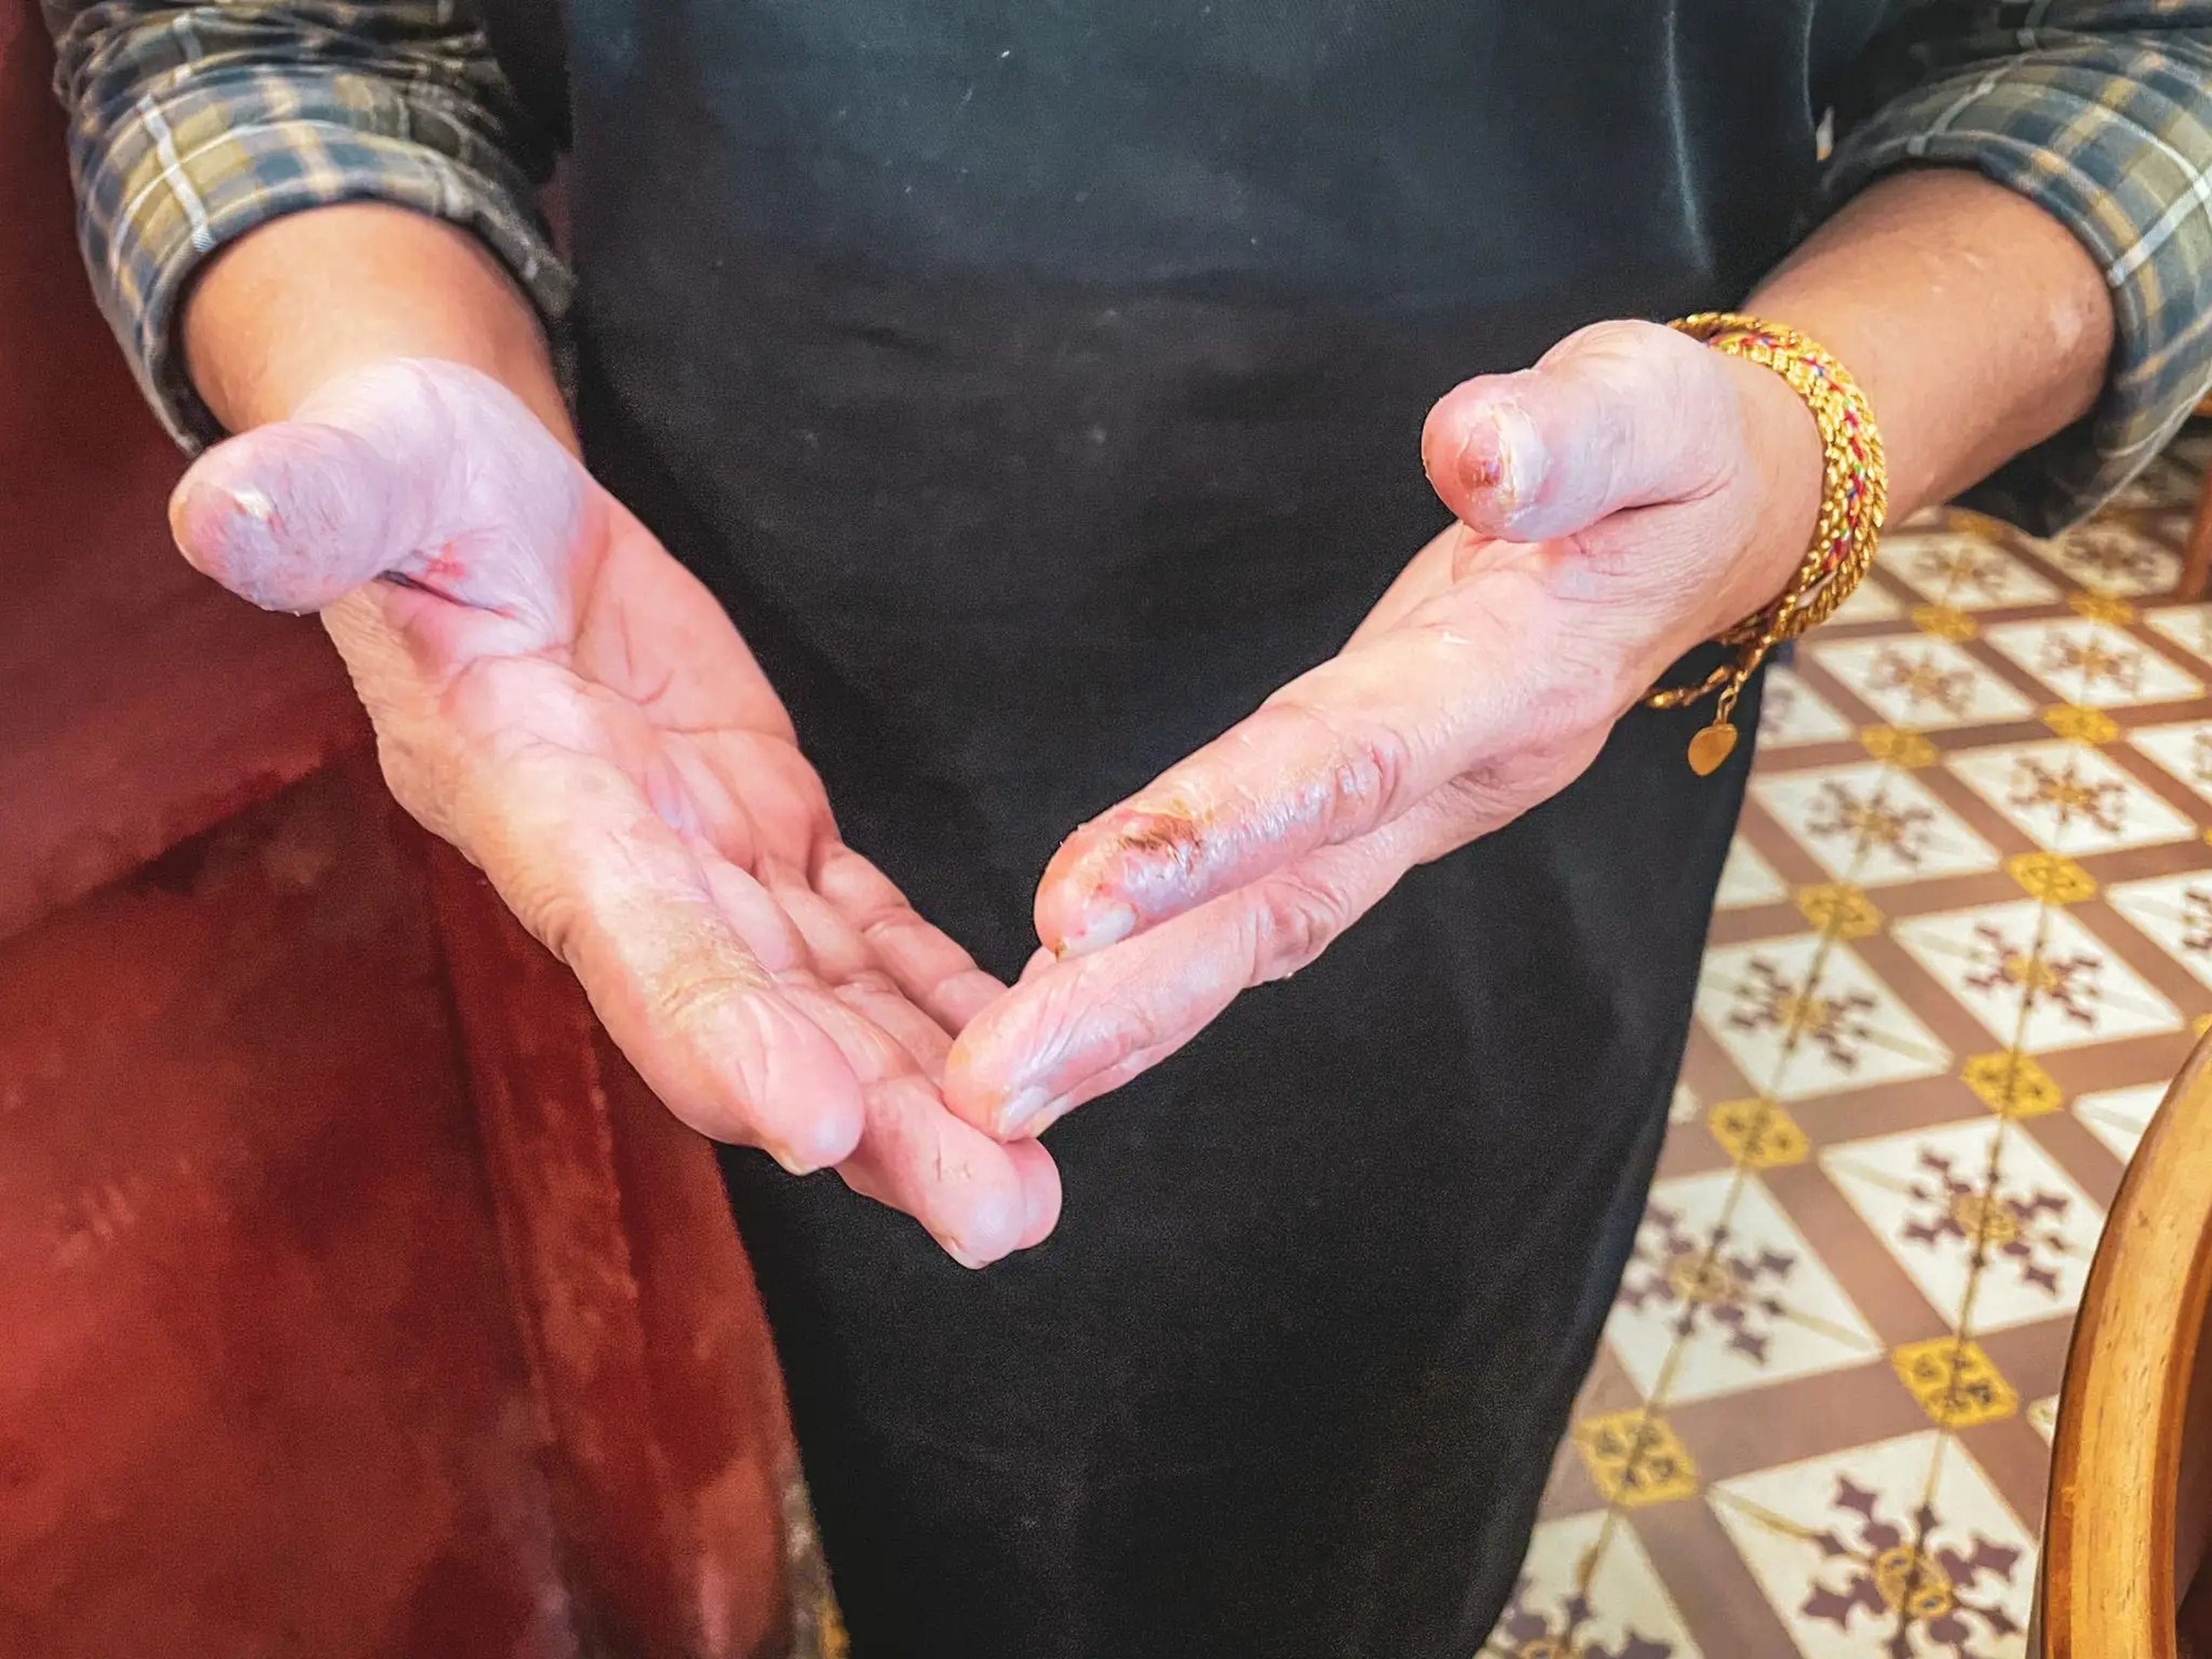 Las manos de la tía Gaik Lean le ayudaron a cocinar hasta conseguir una de las primeras estrellas Michelin de mi Malasia.